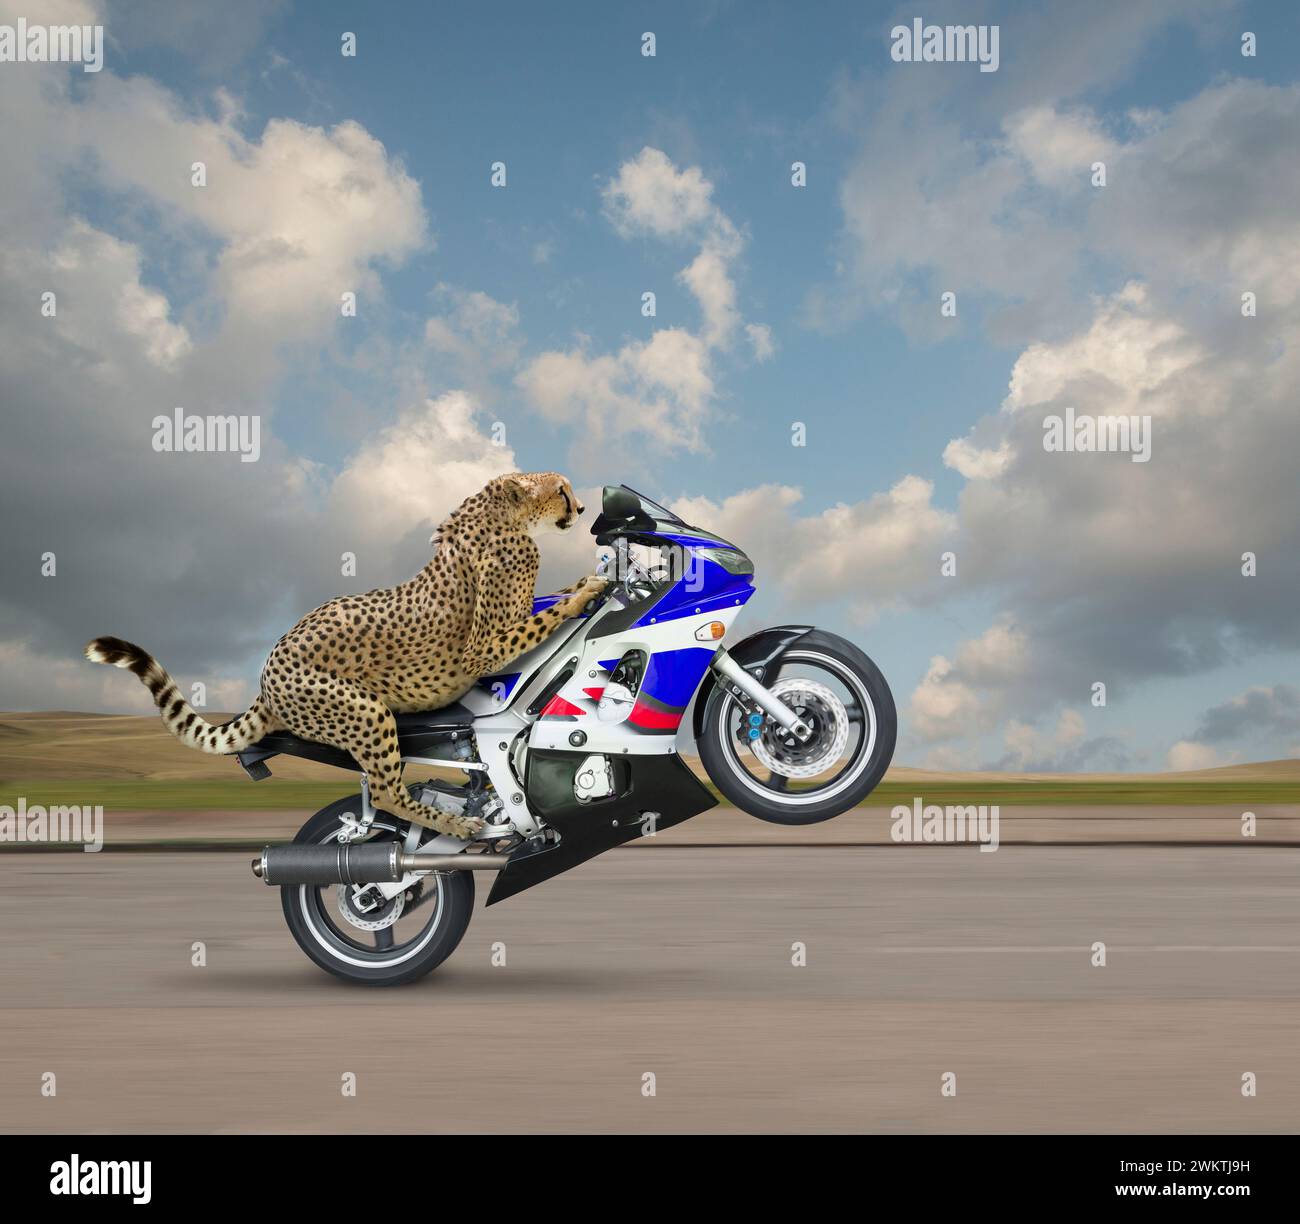 Un guépard fait sauter une roue sur une moto rapide dans une image sur la vitesse, l'innovation et la voie à suivre. Banque D'Images